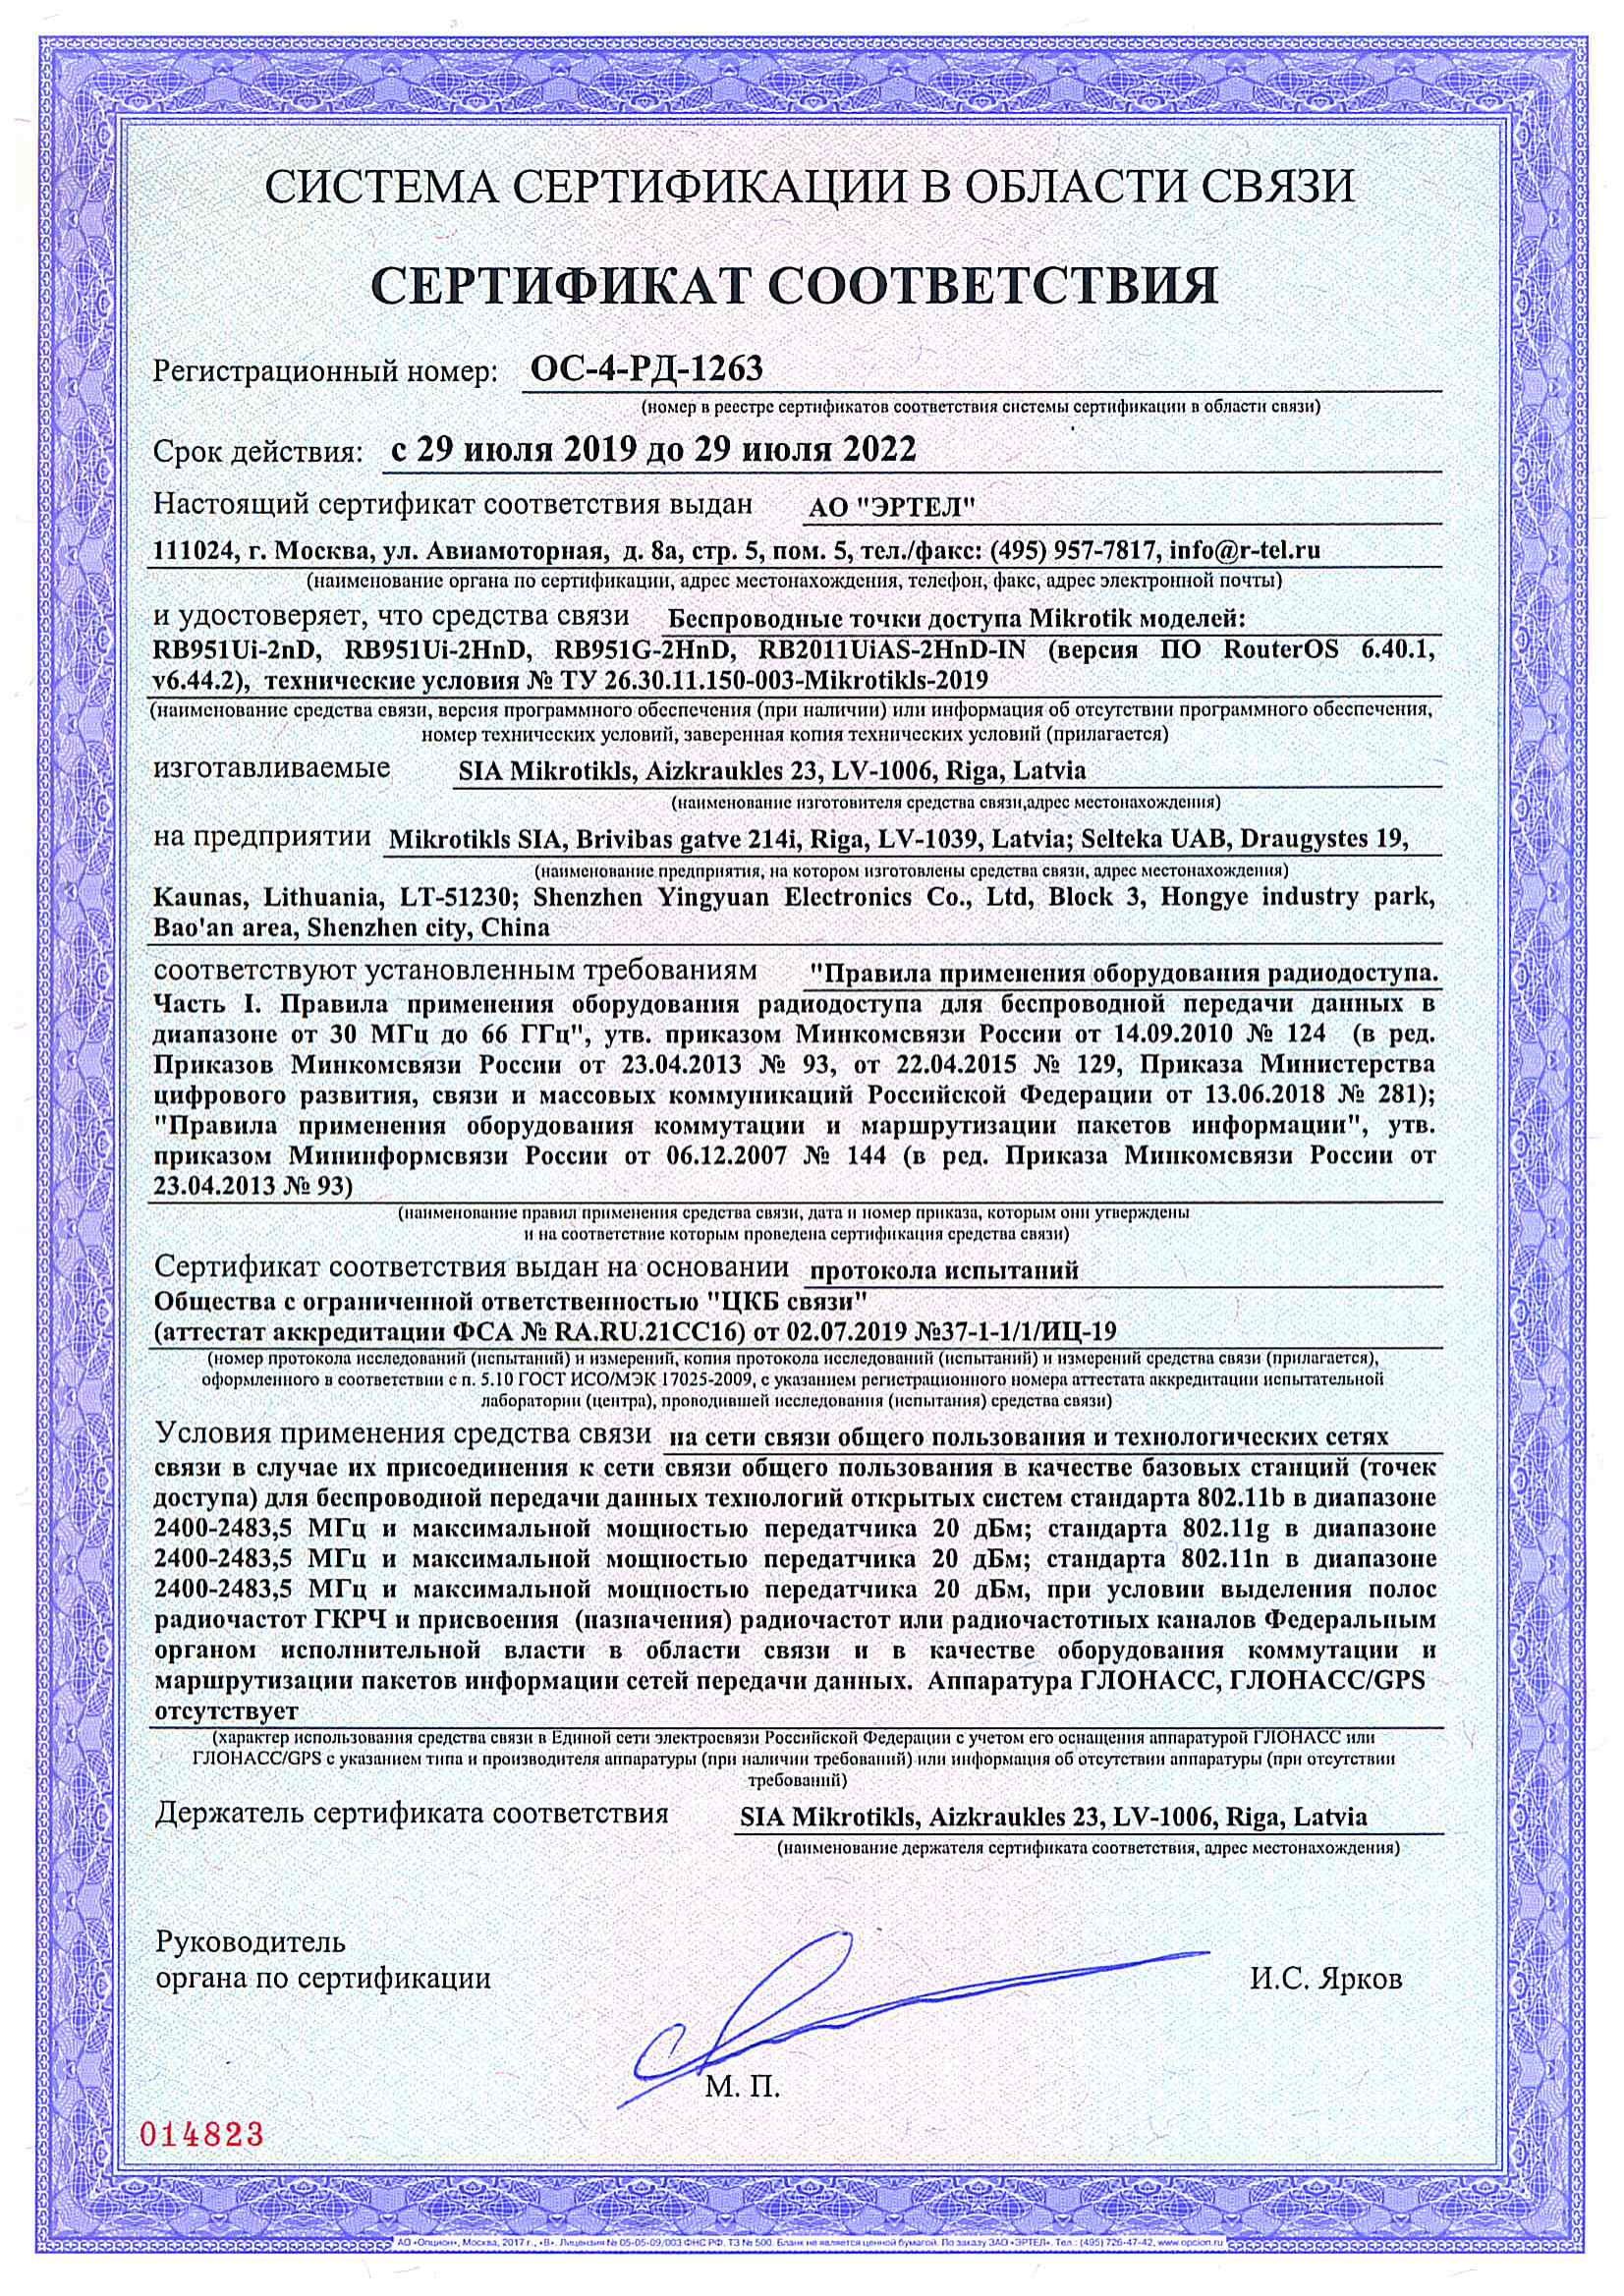 Сертификат соответствия в области связи ОС-4-РД-1263